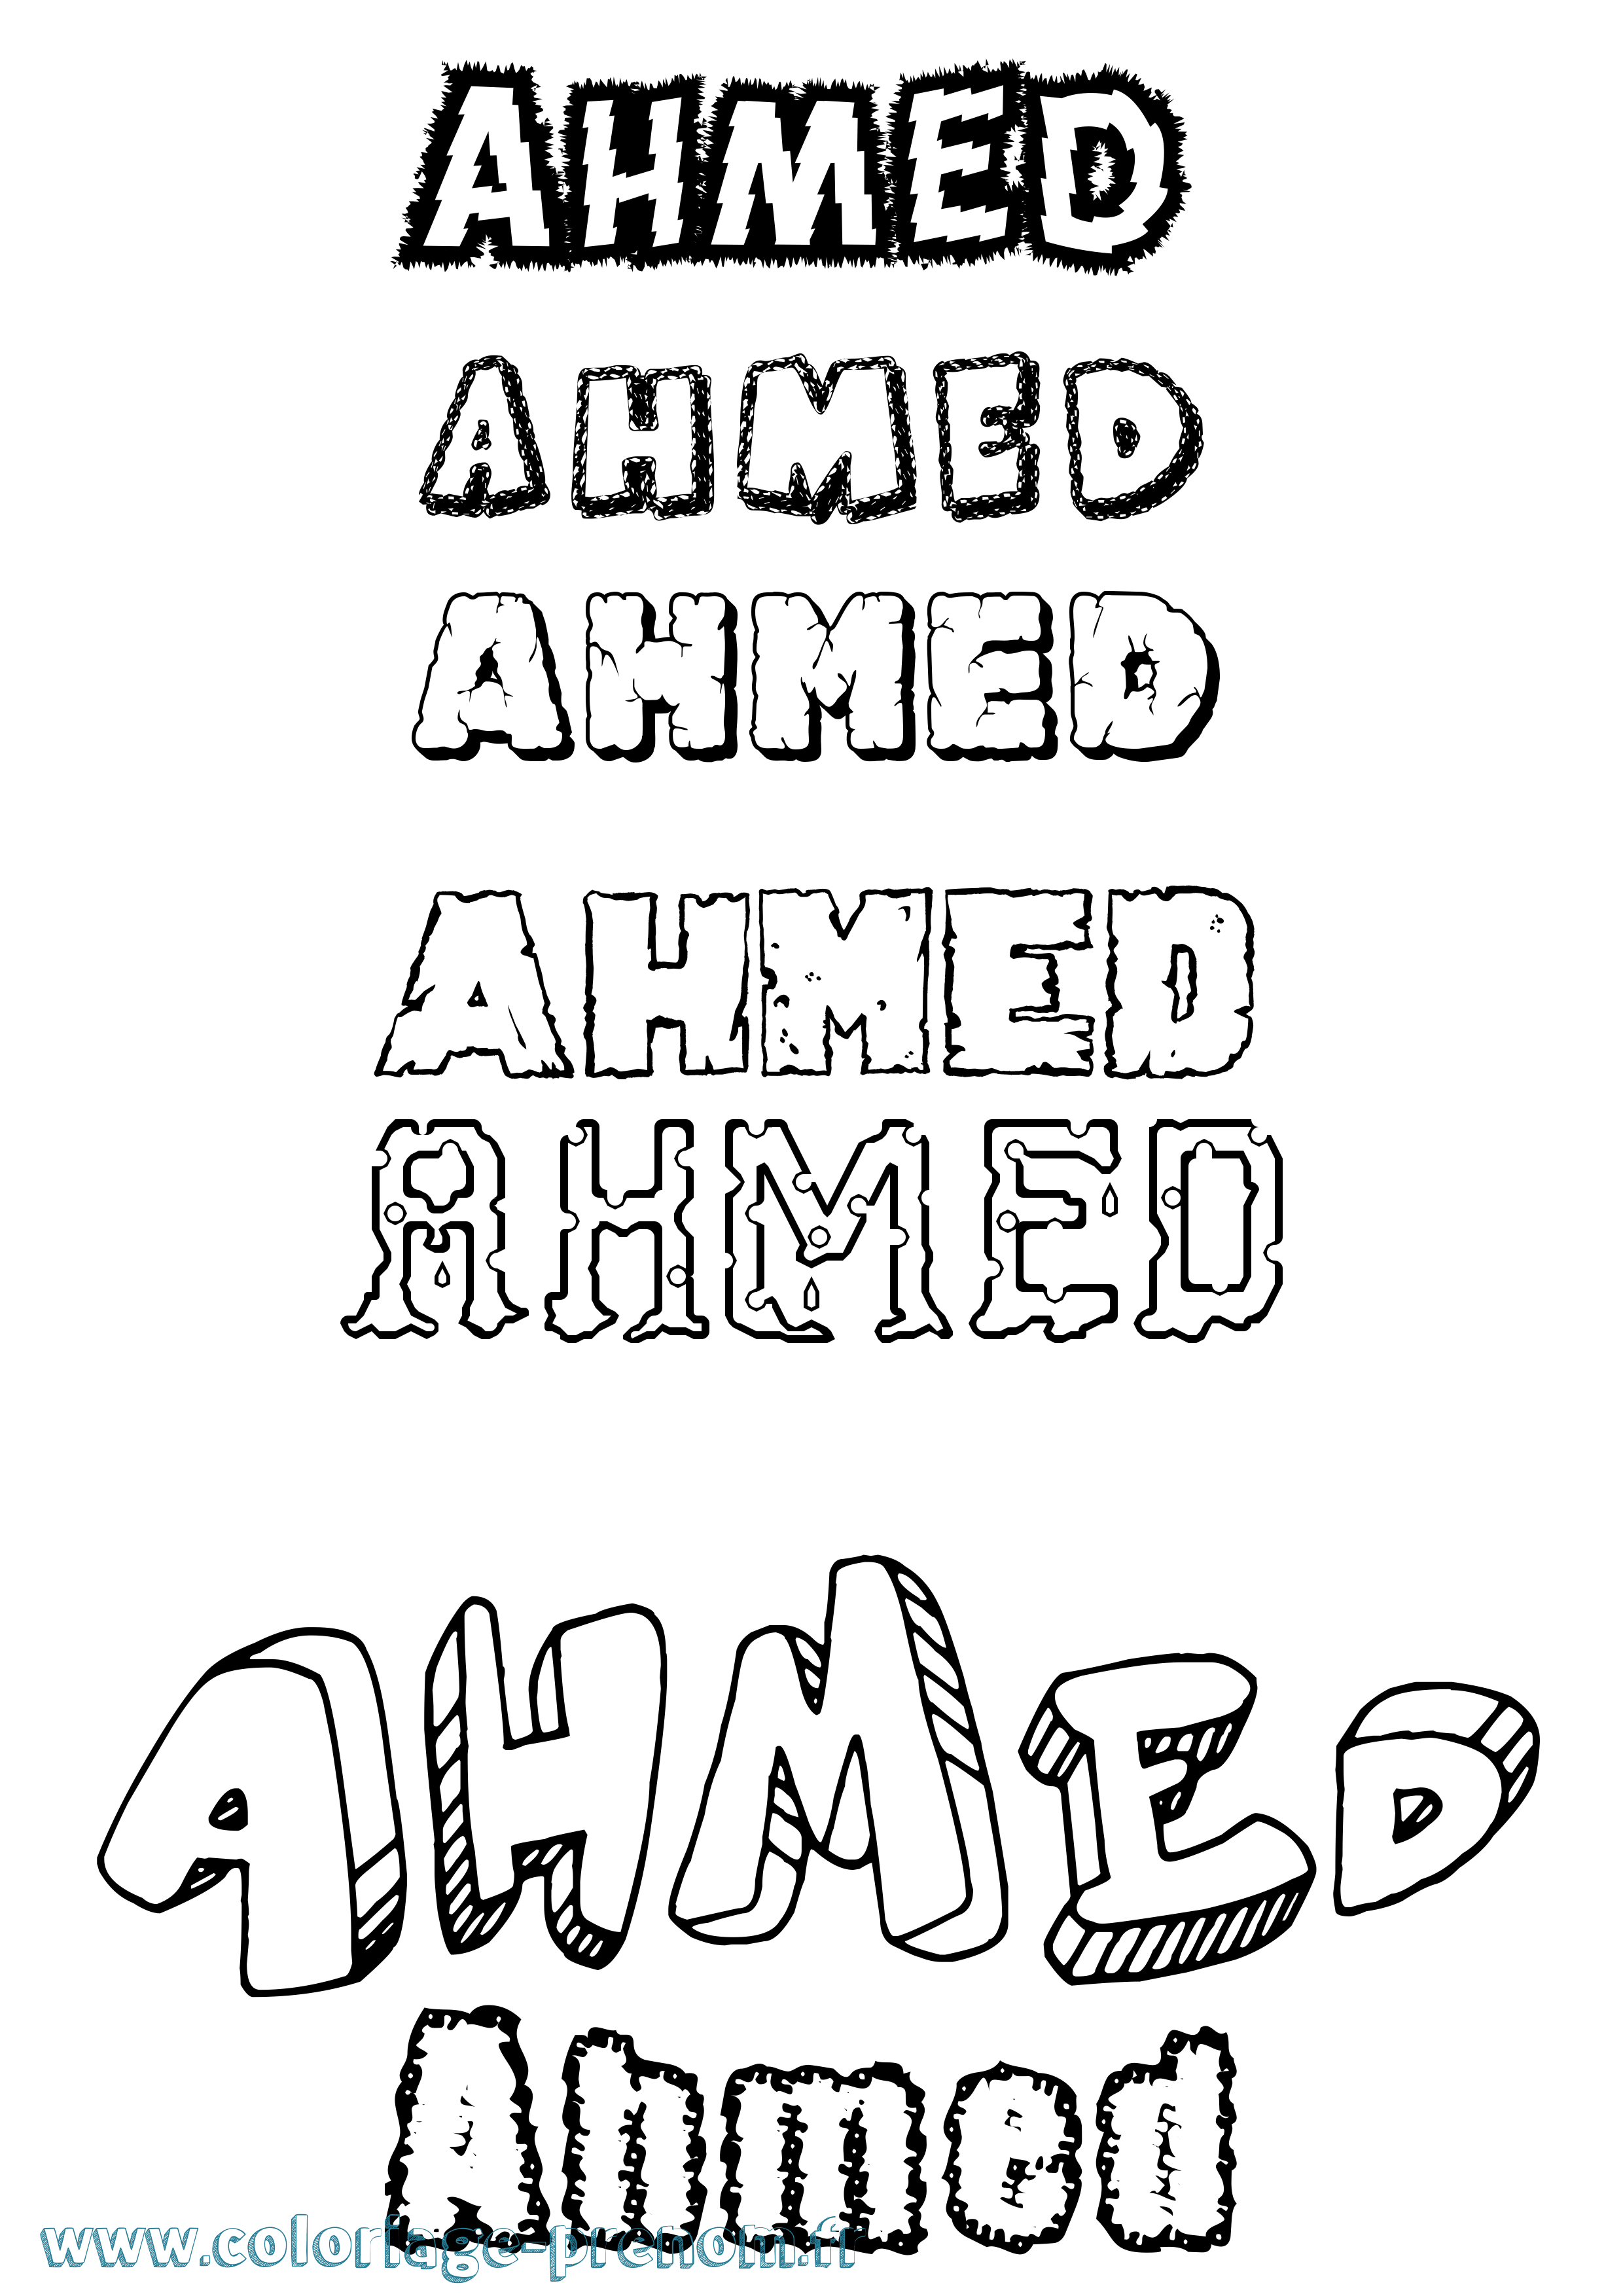 Coloriage prénom Ahmed